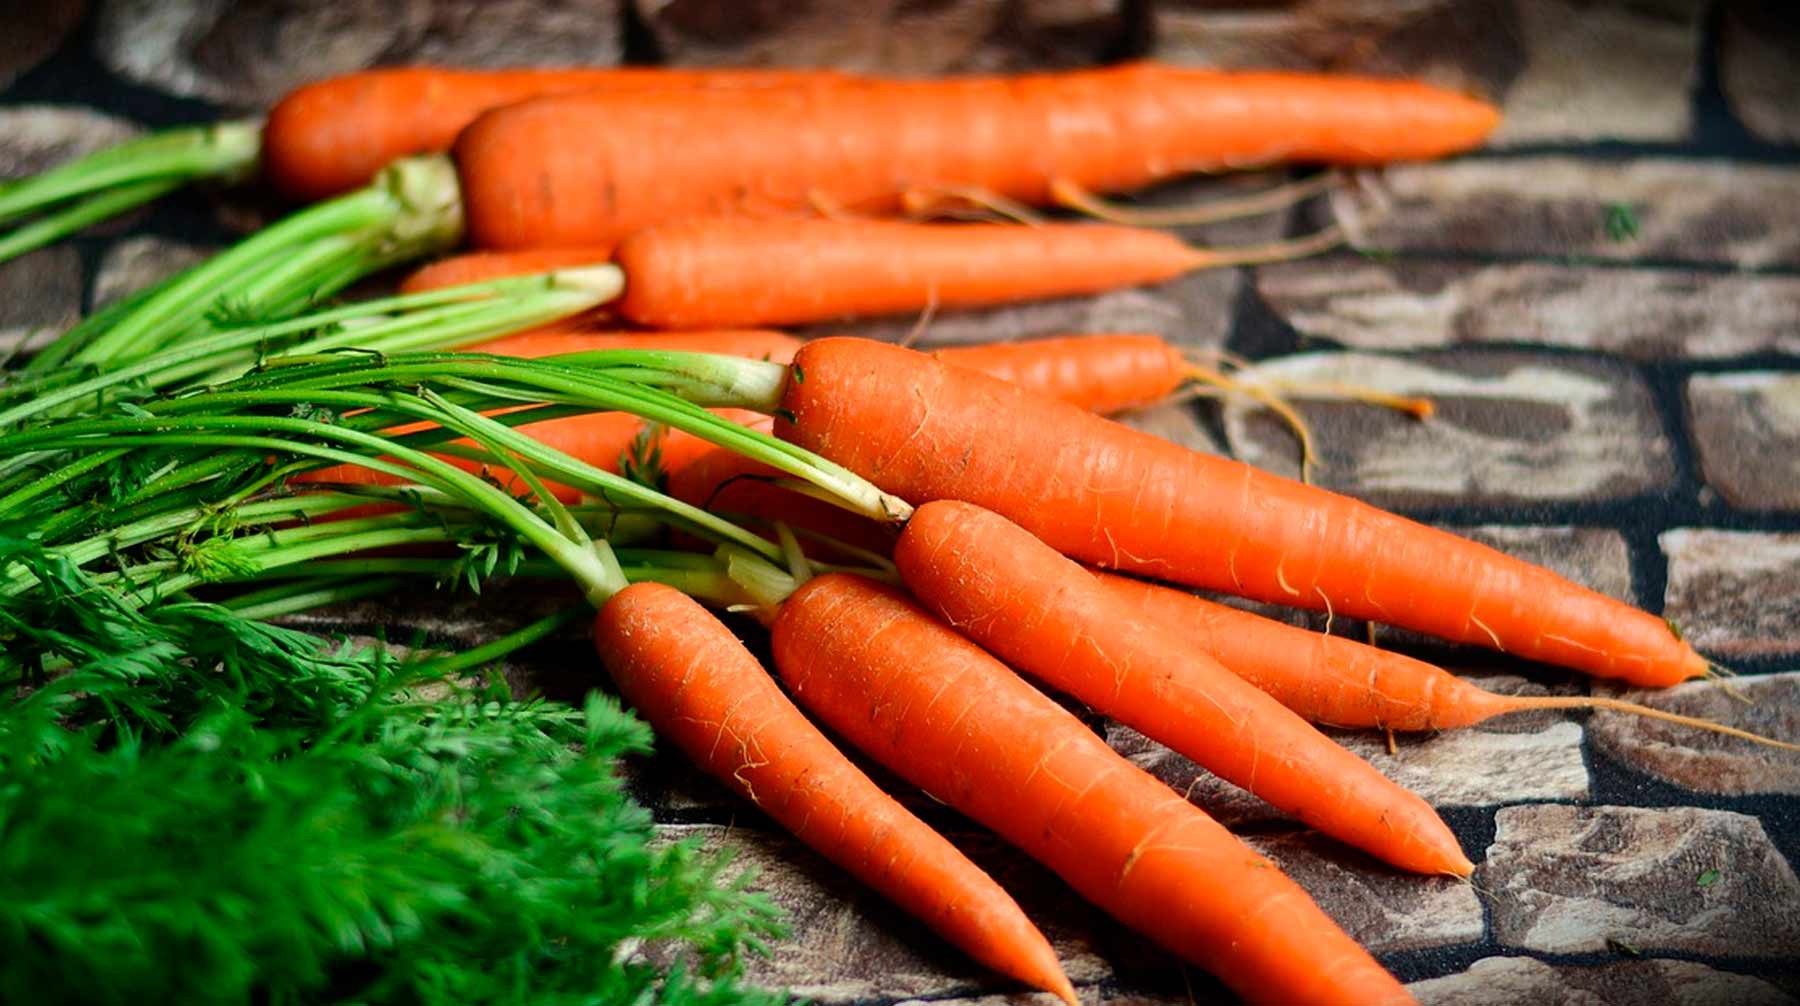 Dailystorm - Пять интересных фактов о моркови